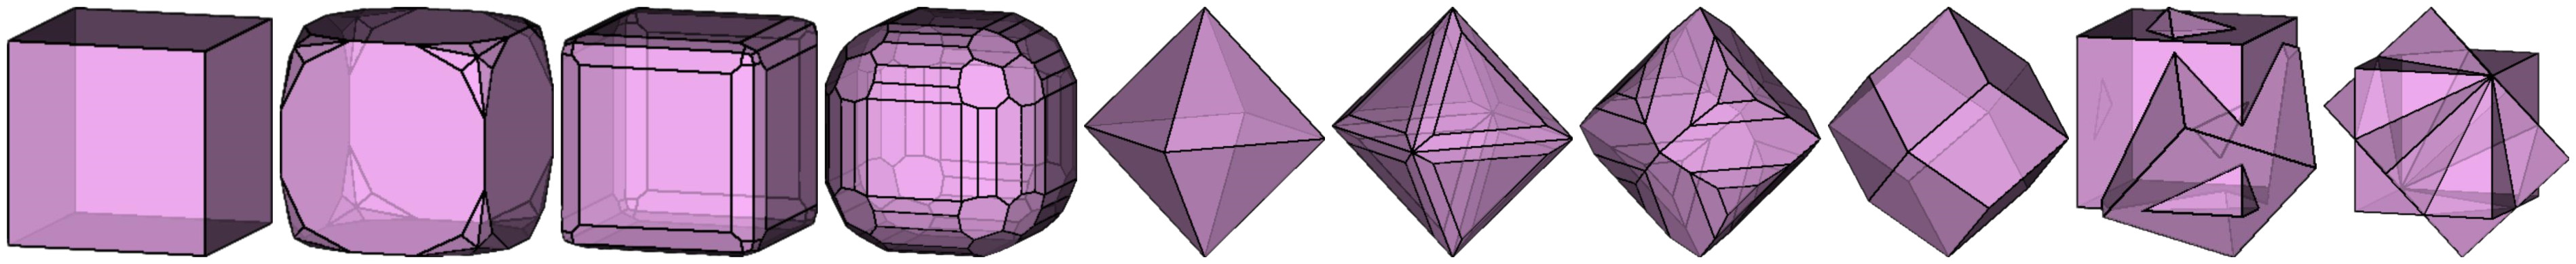 螢石晶體形狀